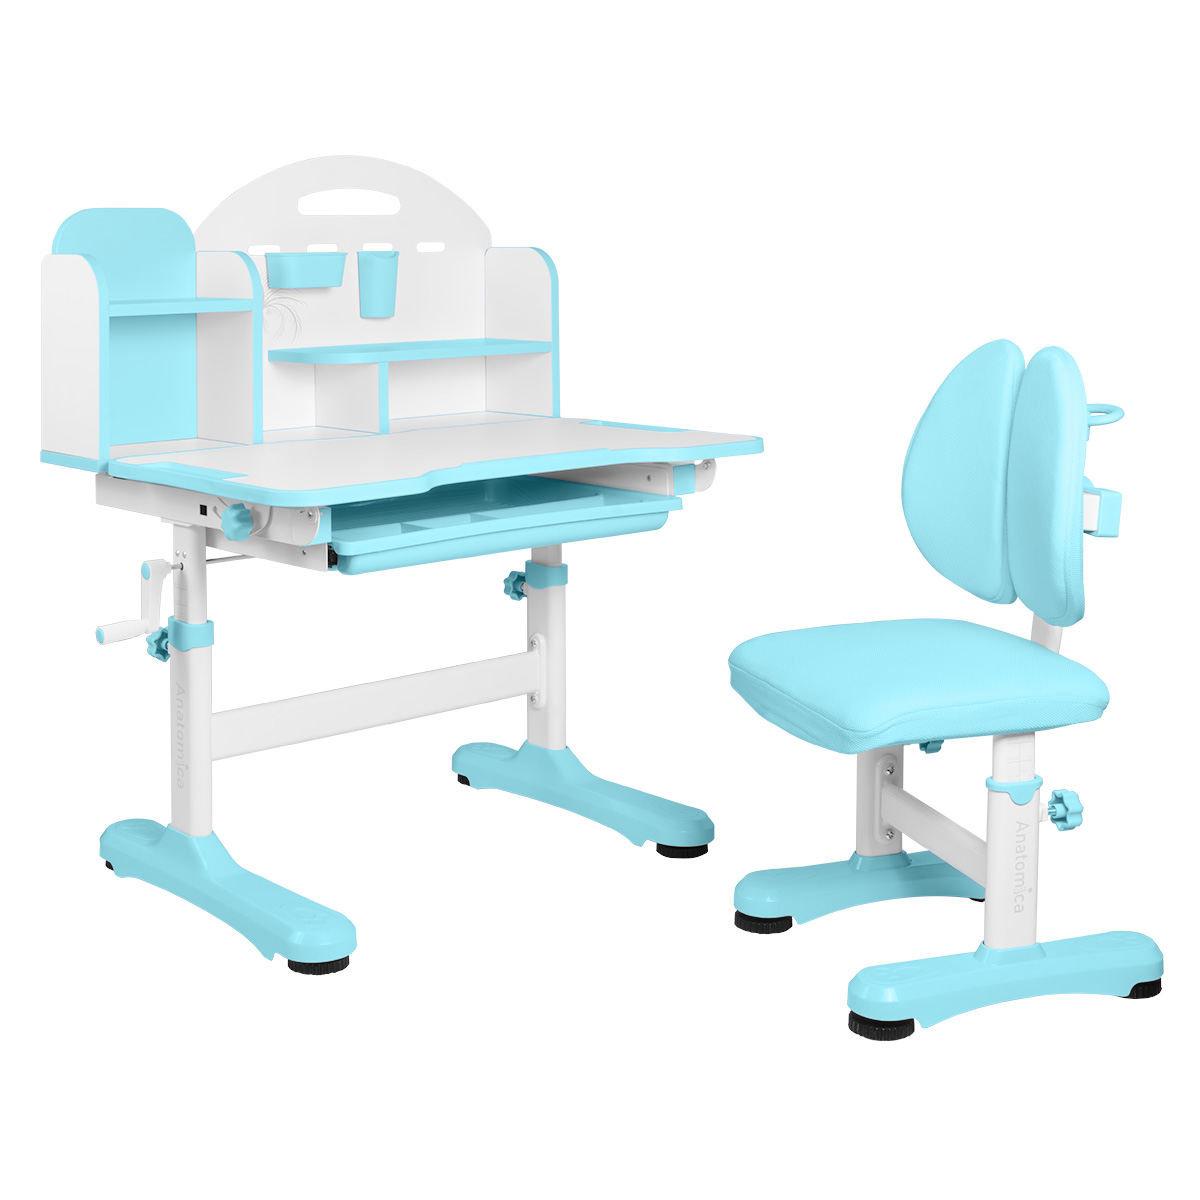 Комплект Anatomica Fiona парта, стул, надстройка, выдвижной ящик, голубой комплект anatomica fiona парта стул надстройка выдвижной ящик серый